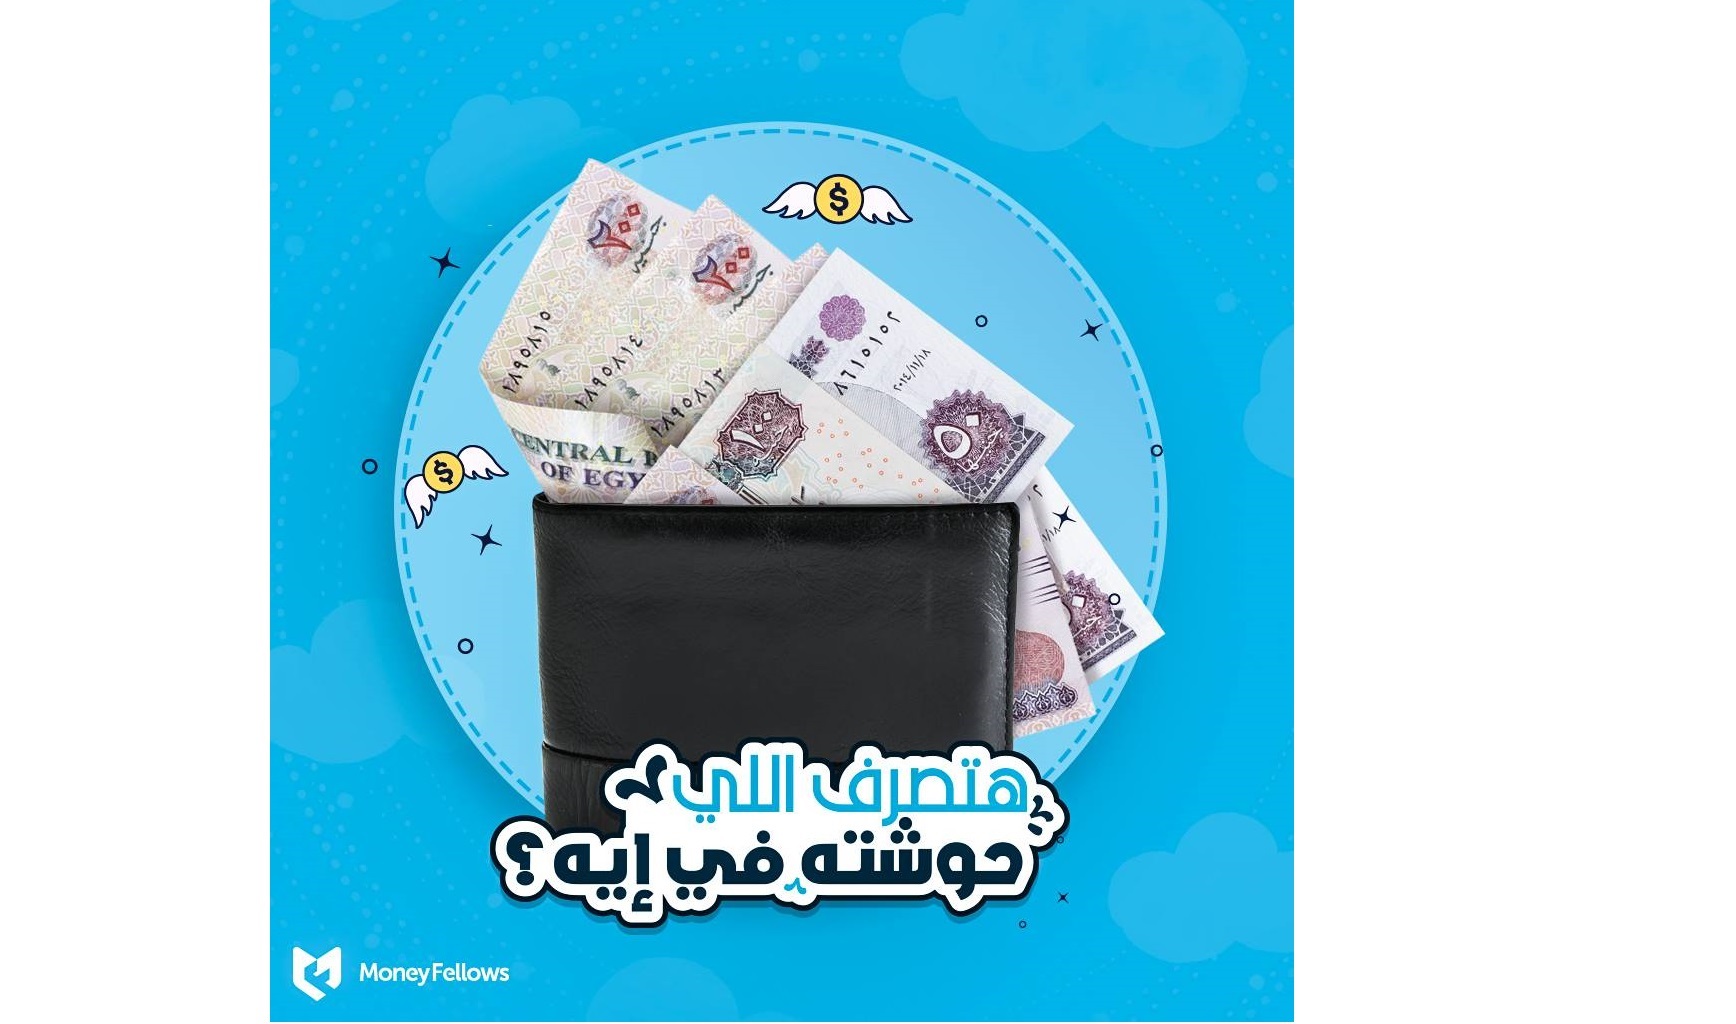 جمعيات رقمية مصرية - اقتراض مصريين من بعضهم بلا فوائد مصرفية - تكافل اجتماعي رقمي في مصر.